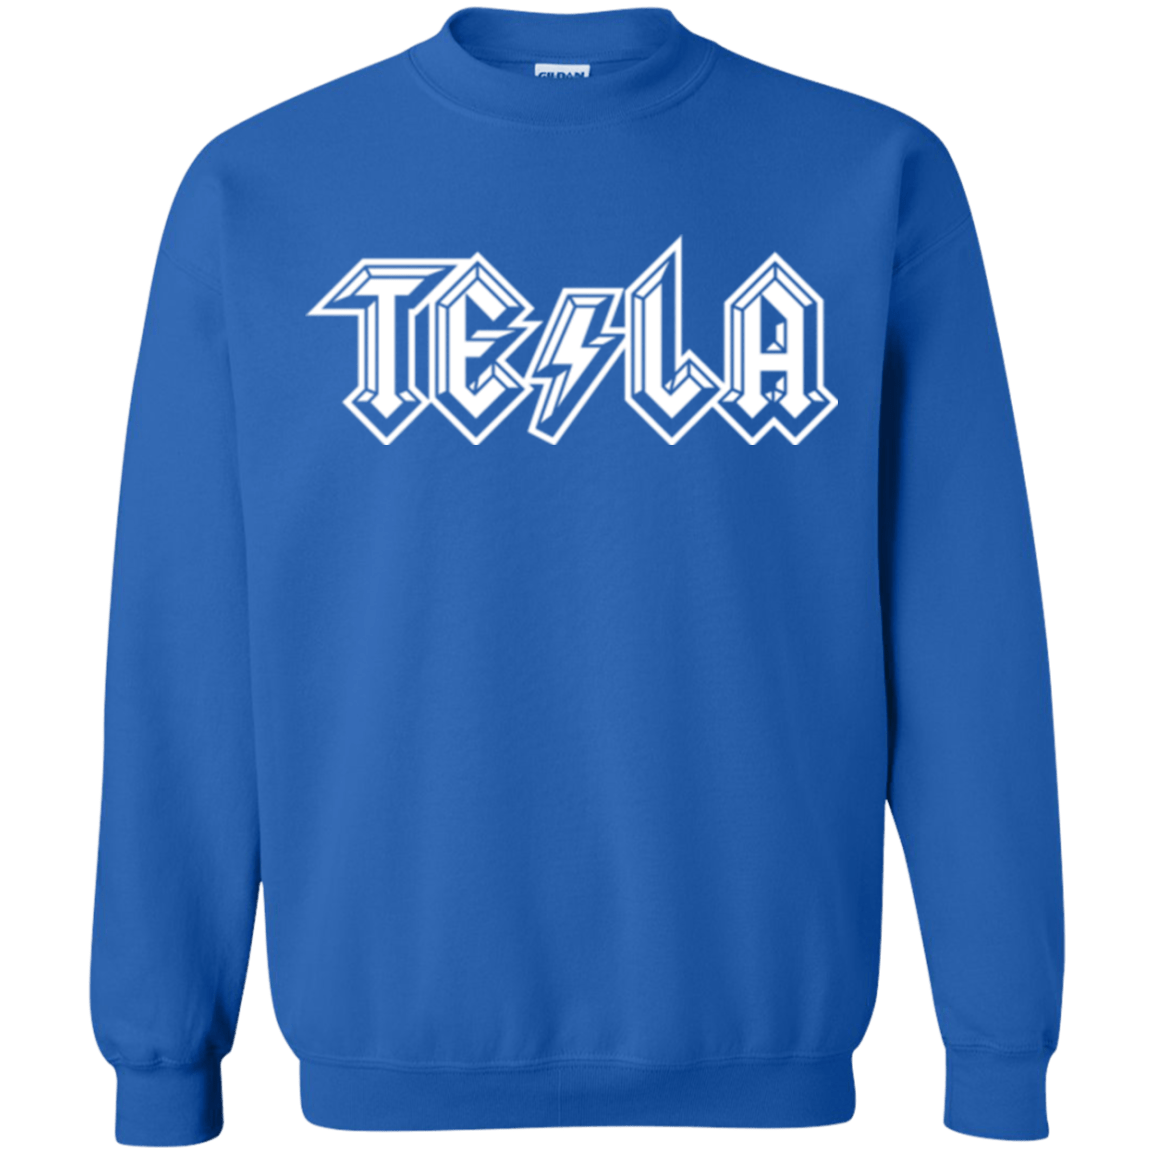 Sweatshirts Royal / Small TESLA Crewneck Sweatshirt